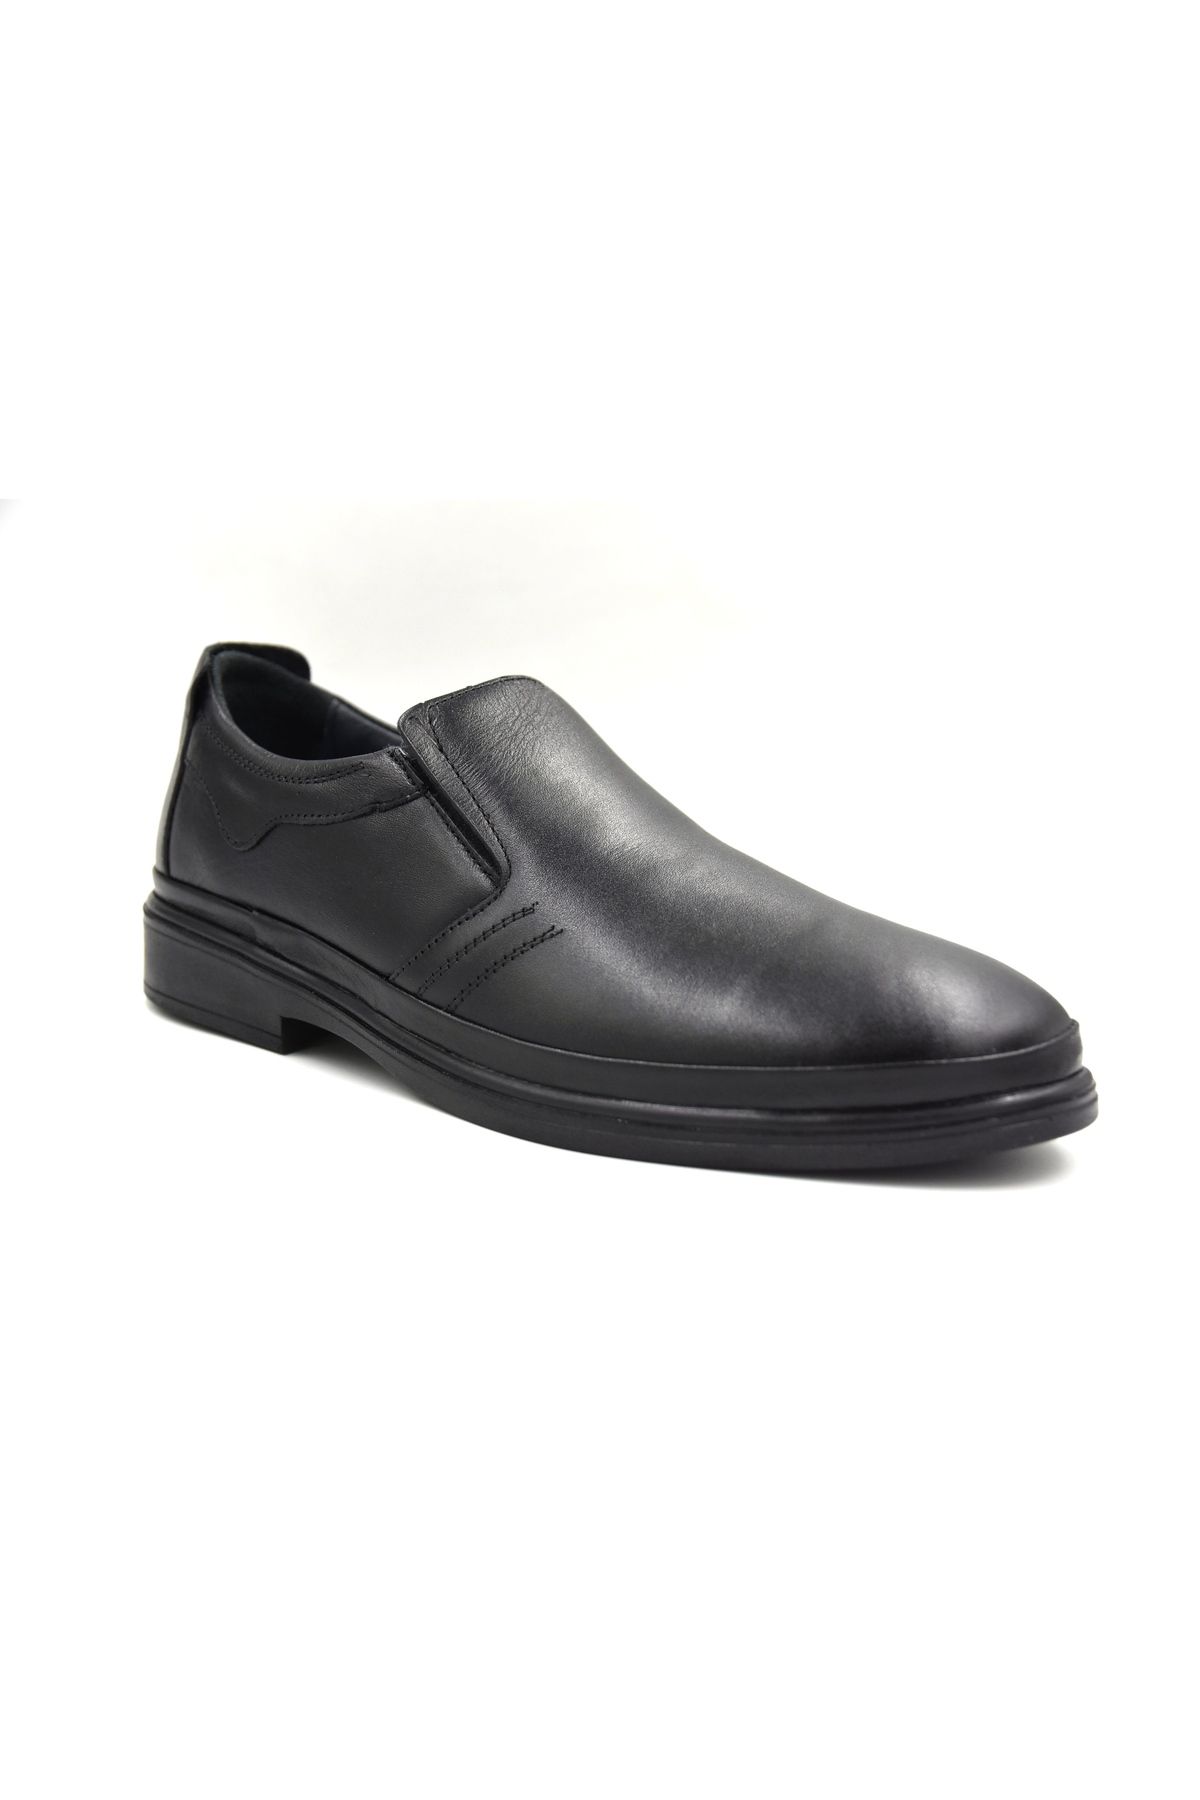 Prego Içi Dışı Hakiki Deri Poli Hafif Taban Günlük Erkek Comfort Ayakkabı Siyah